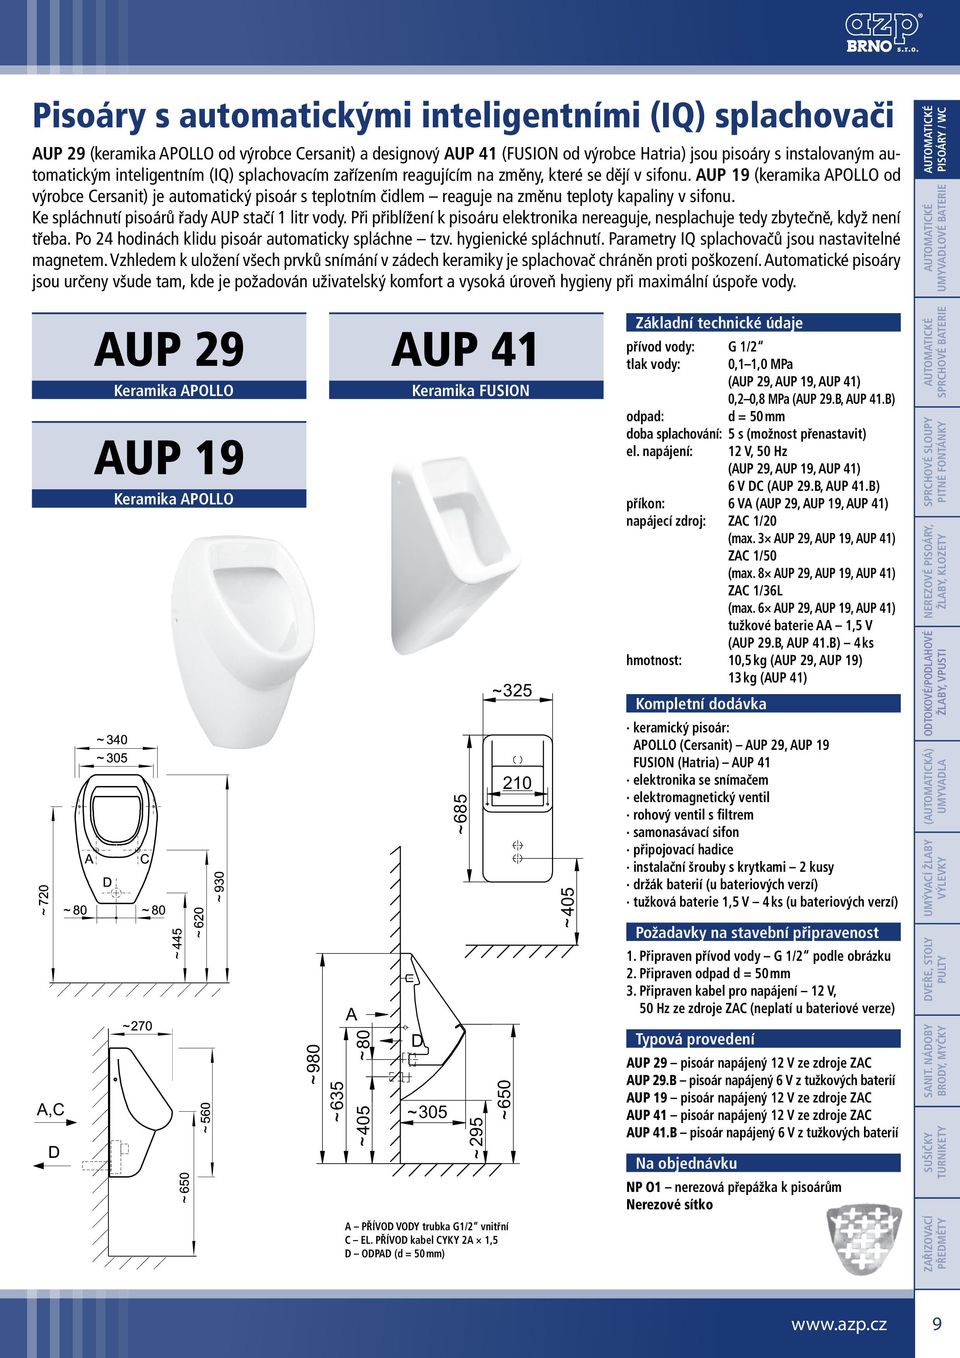 AUP 19 (keramika APOLLO od výrobce Cersanit) je automatický pisoár s teplotním čidlem reaguje na změnu teploty kapaliny v sifonu. Ke spláchnutí pisoárů řady AUP stačí 1 litr vody.